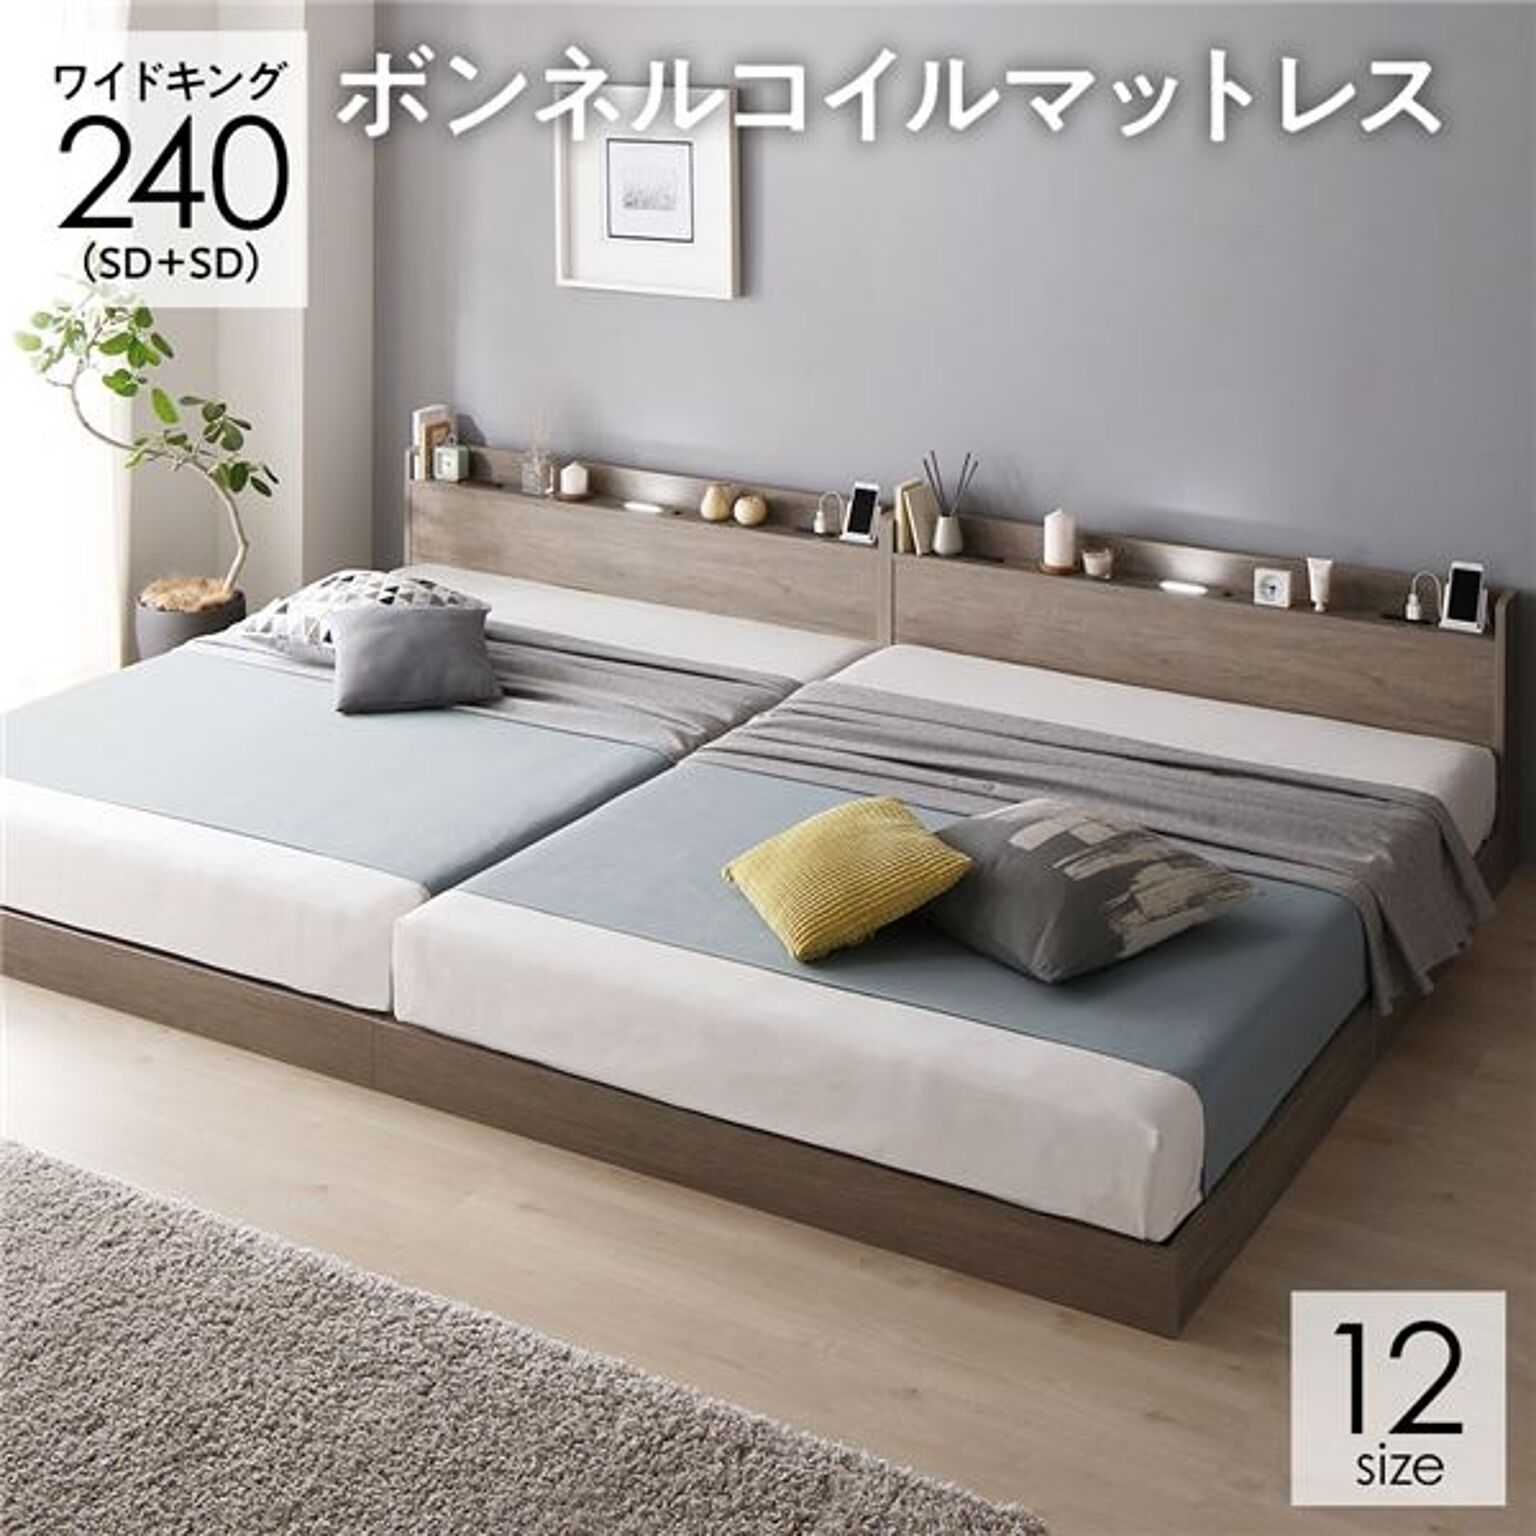 ベッド 連結ベッド ワイドキング240SD+SD セミダブル+セミダブル